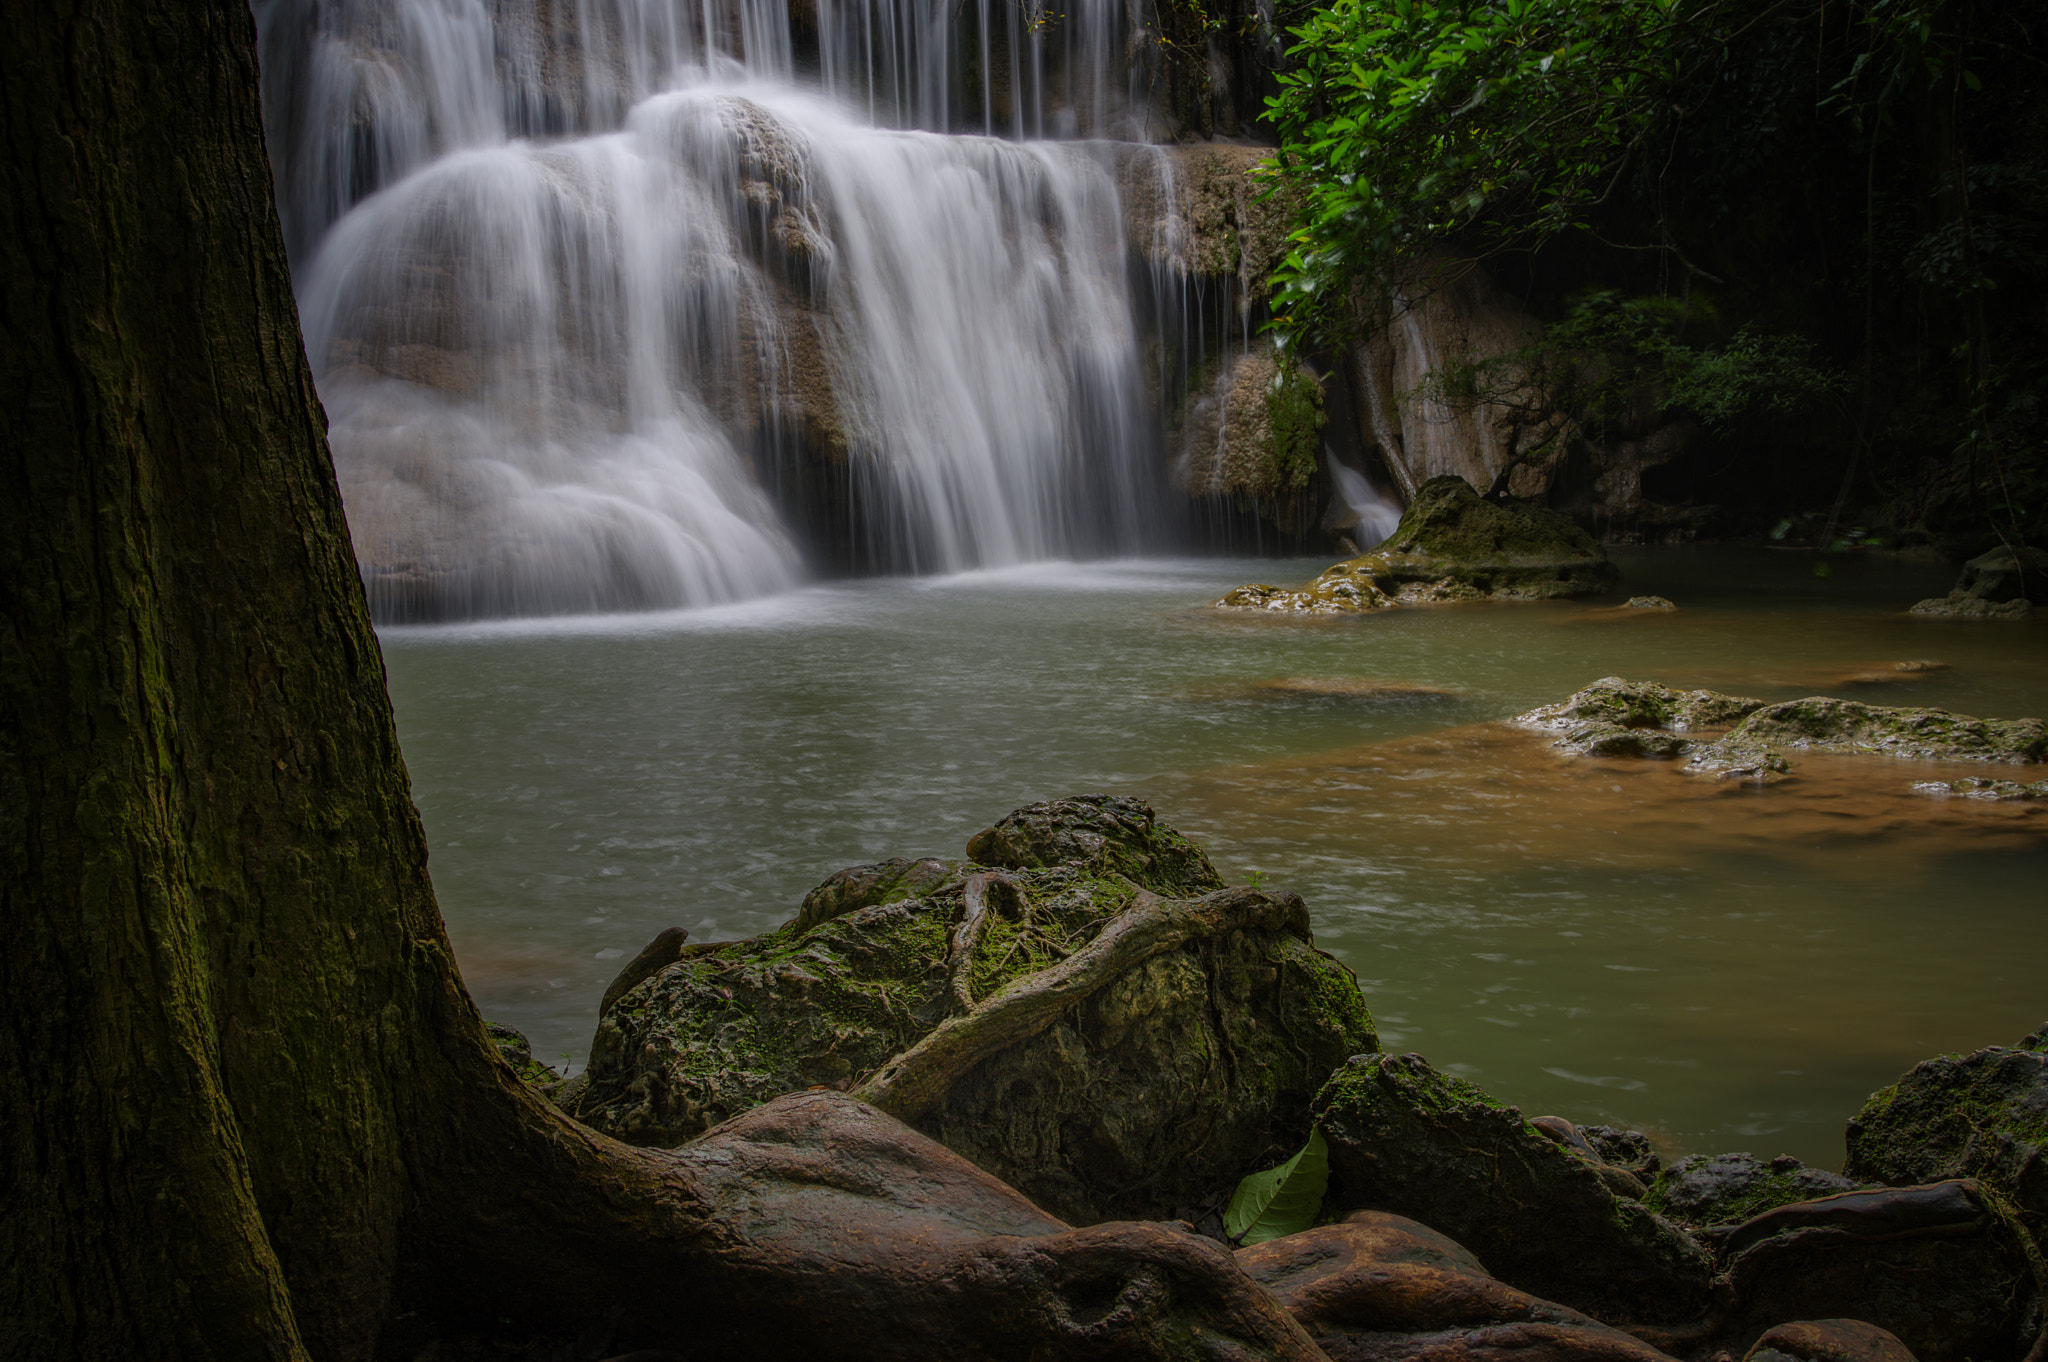 Pentax KP sample photo. Huay mae kamin waterfall at kanchanaburi, thailand photography